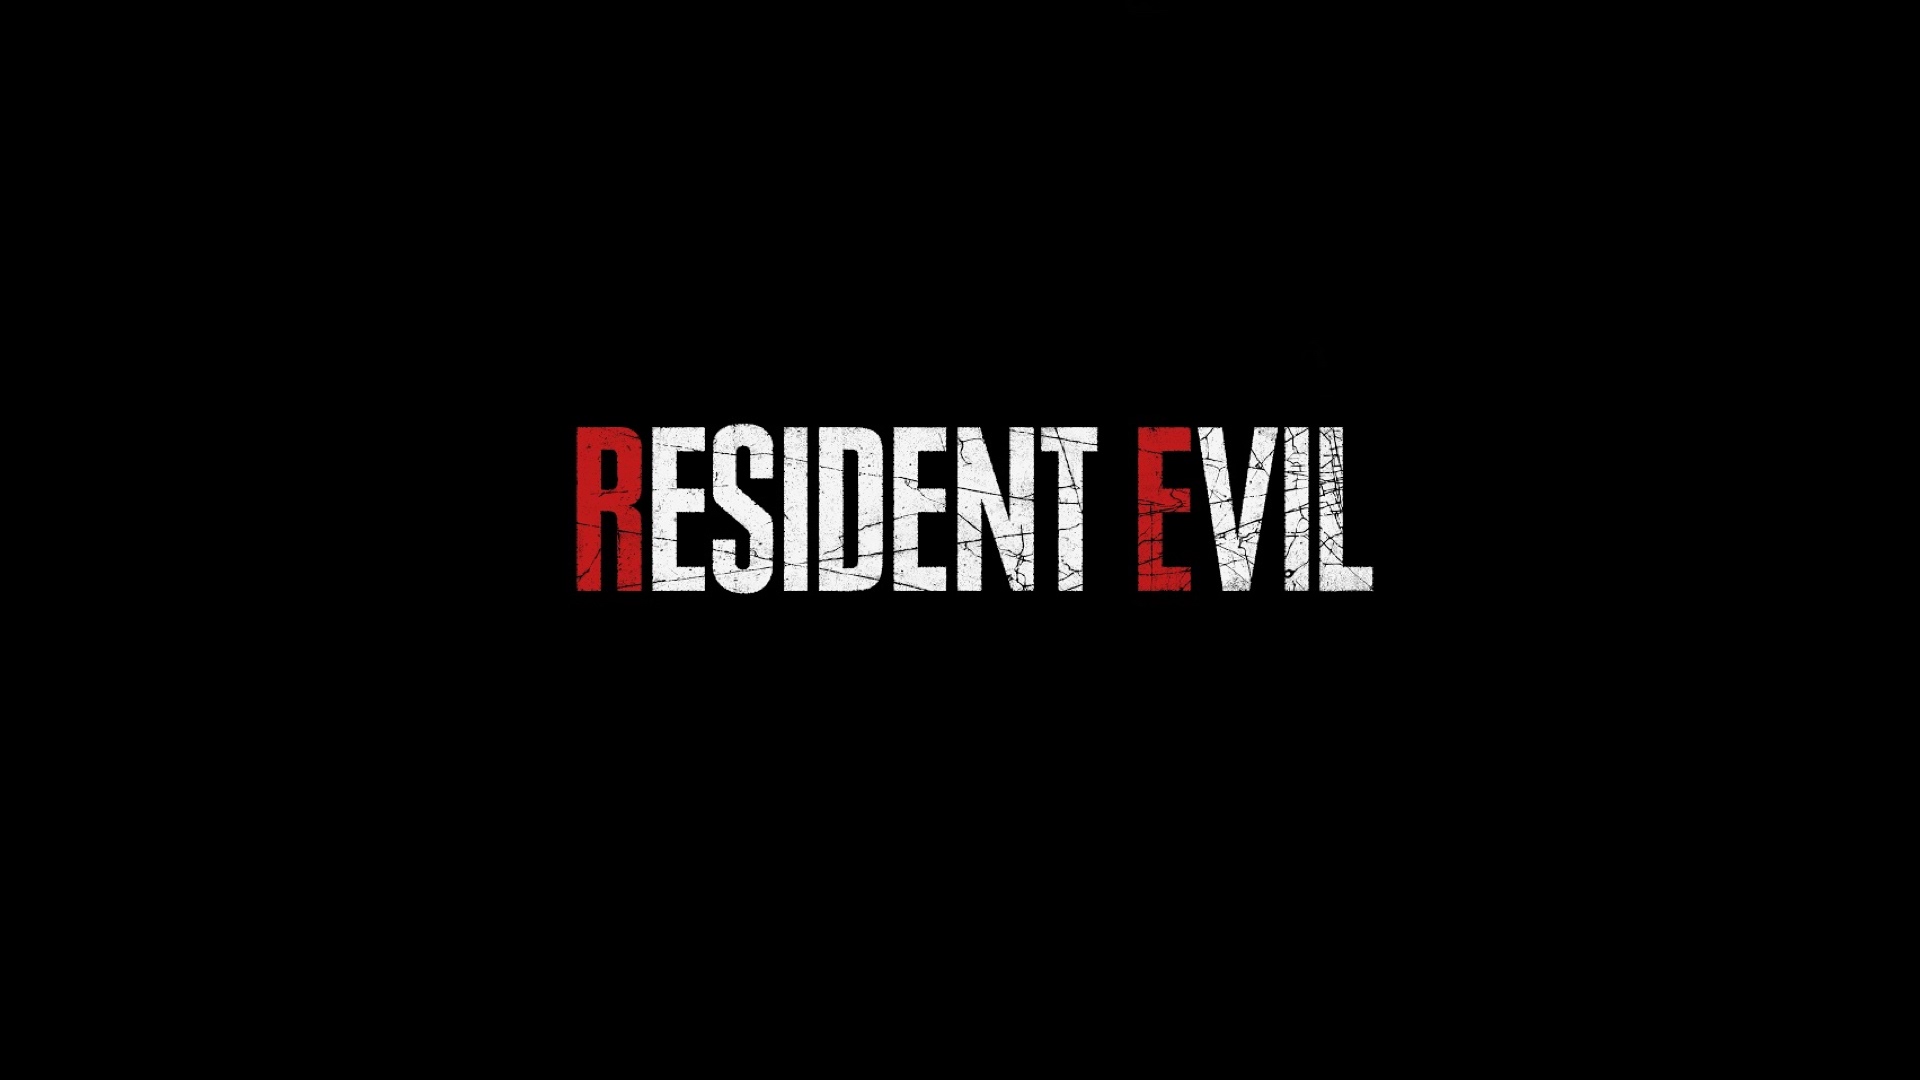 شایعه: کپکام در حال ساخت پنج نسخه از سری بازی Resident Evil است